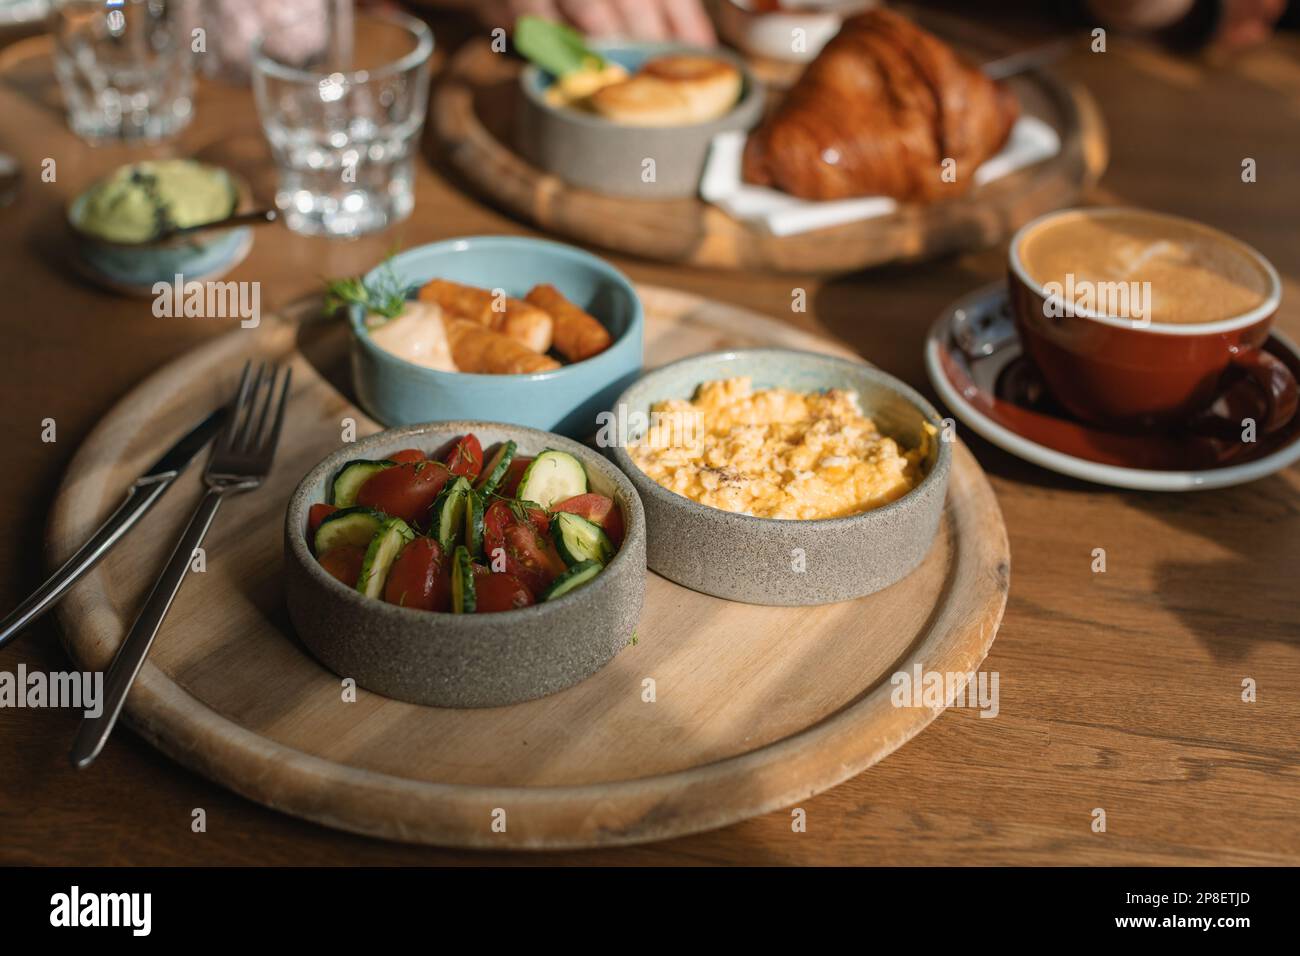 Frühstückstisch mit Rührei, Würstchen, Avocado, Croissant, Gurke, Tomaten, Kaffee und Wasser Stockfoto